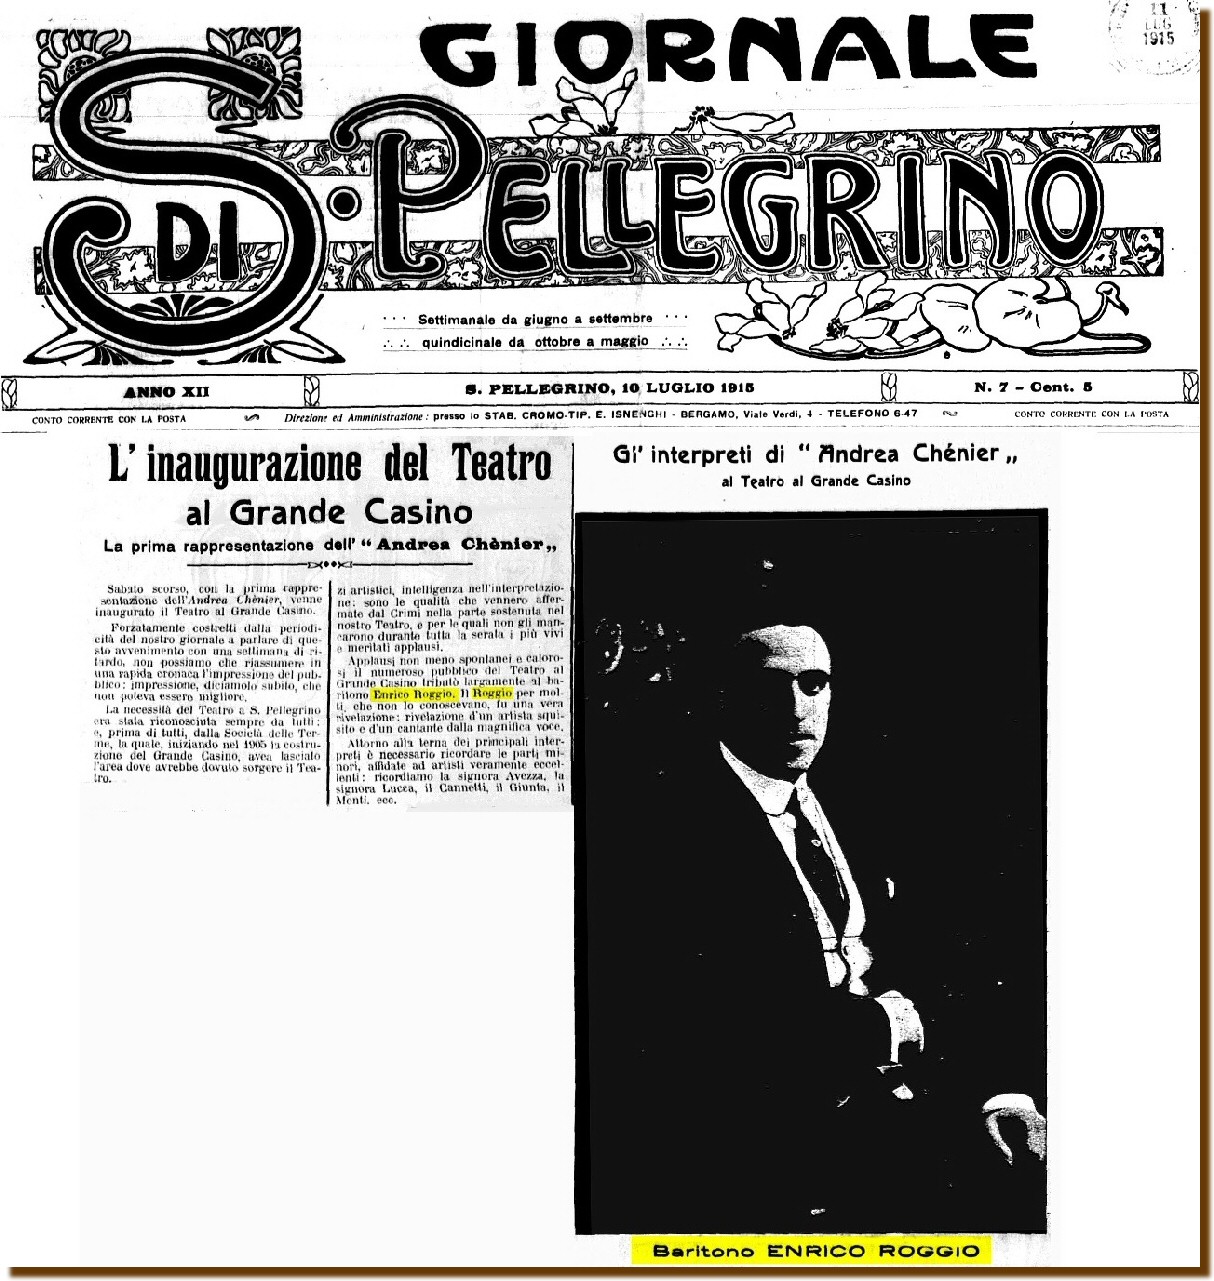 S.Pellegrino 10 luglio 1915 - Teatro al Grande Casino 